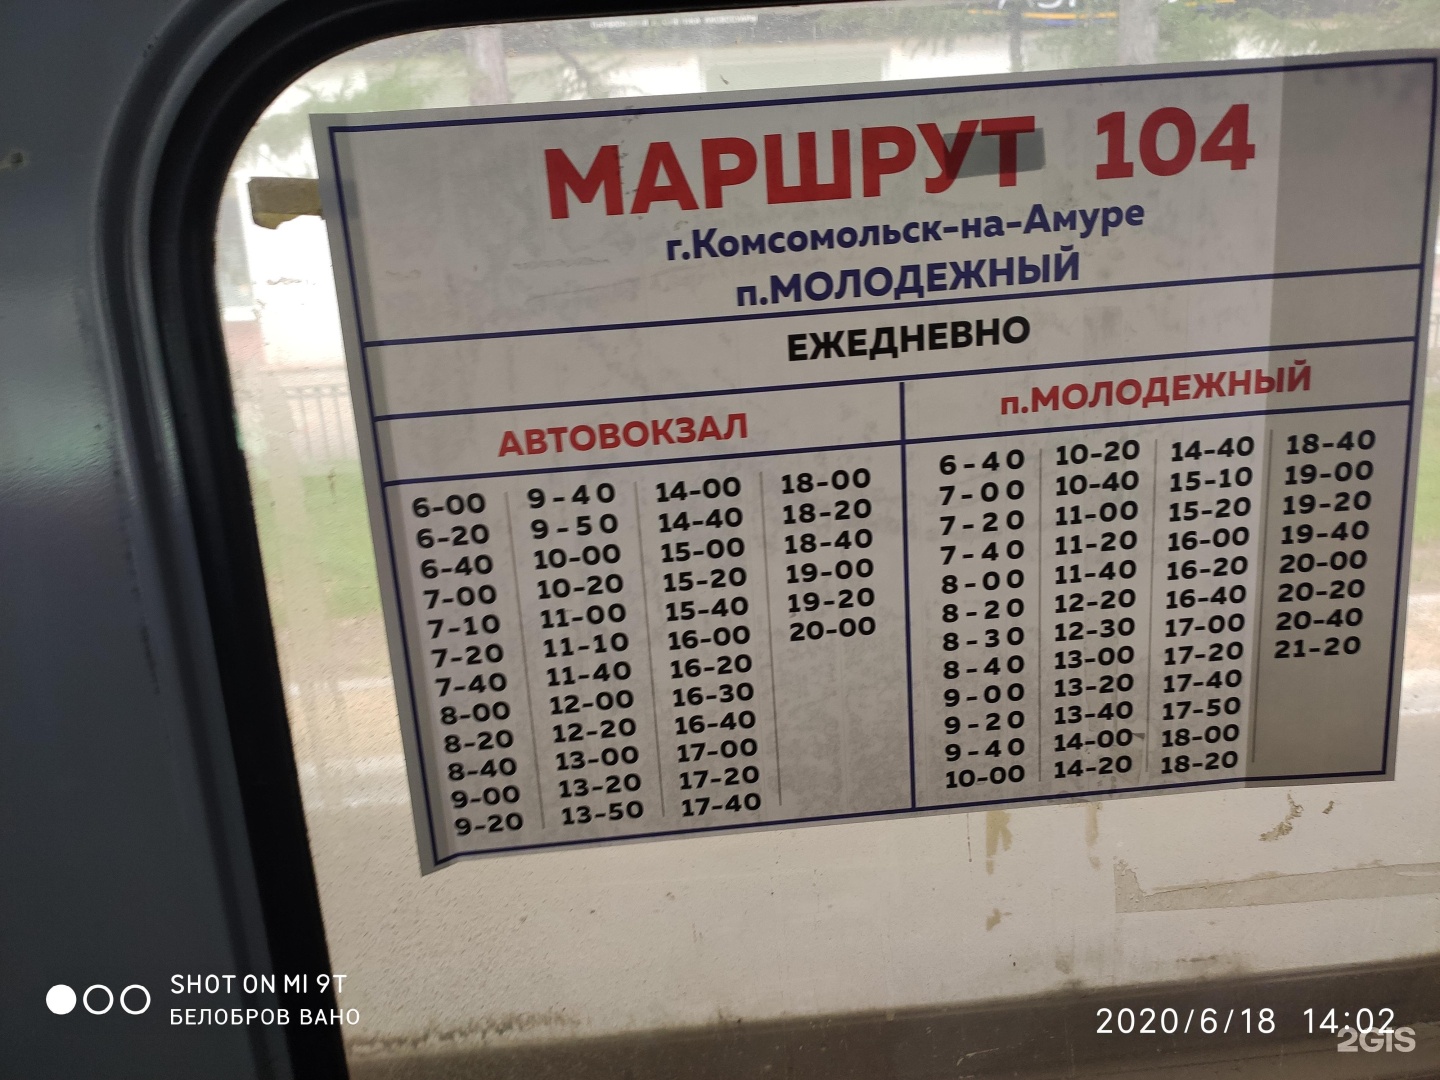 Поезд хабаровск комсомольск на амуре купить билет. Расписание 104 автобуса Комсомольск на Амуре. Расписание 104. Маршрут 104 автобуса Комсомольск-на-Амуре. Расписание автобусов Комсомольск-на-Амуре.